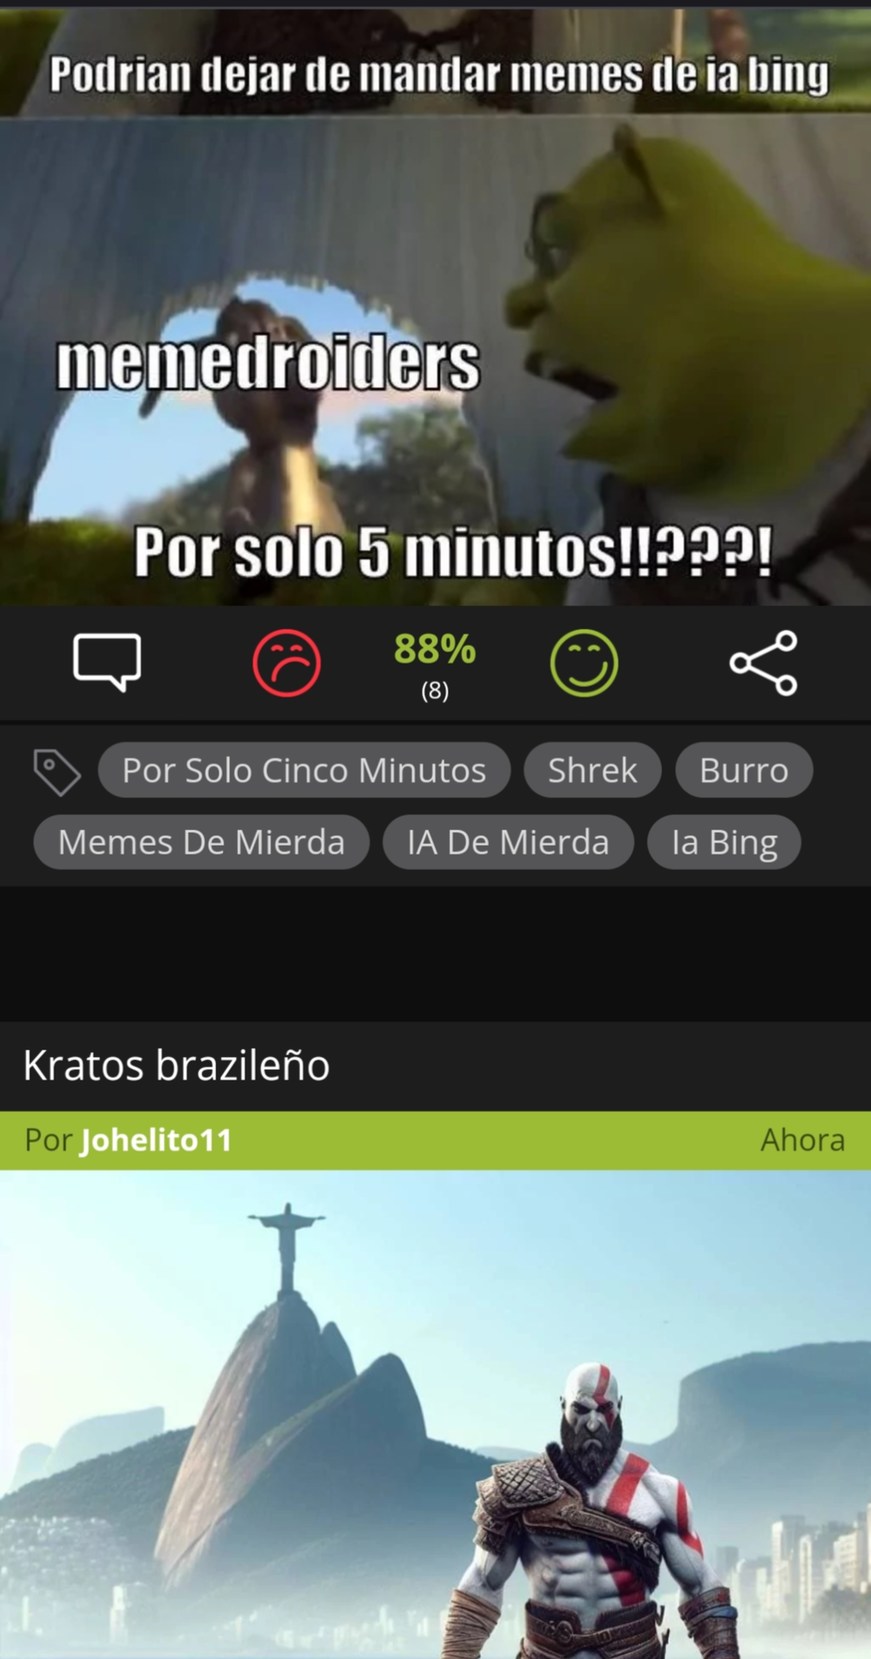 Kratos brazileño - meme